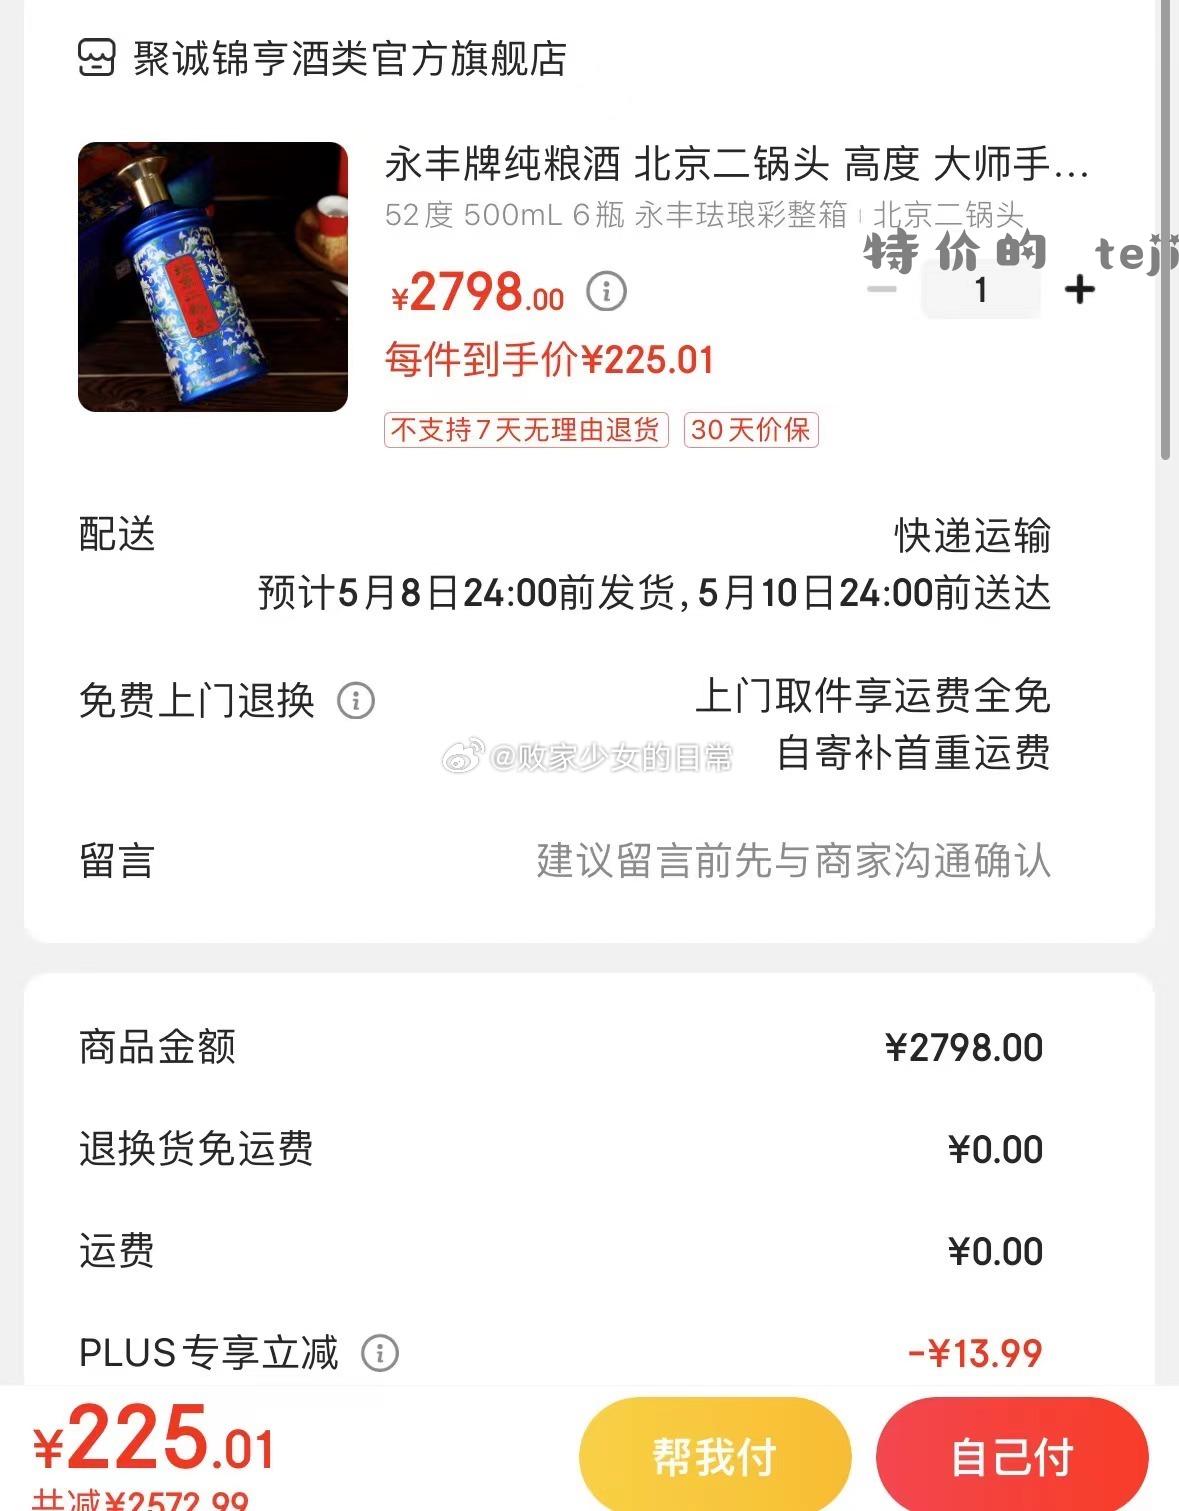 永丰牌纯粮酒 北京二锅头 高度 大师手酿 52度 500mL 2瓶 永丰珐琅彩双瓶 - 特价的